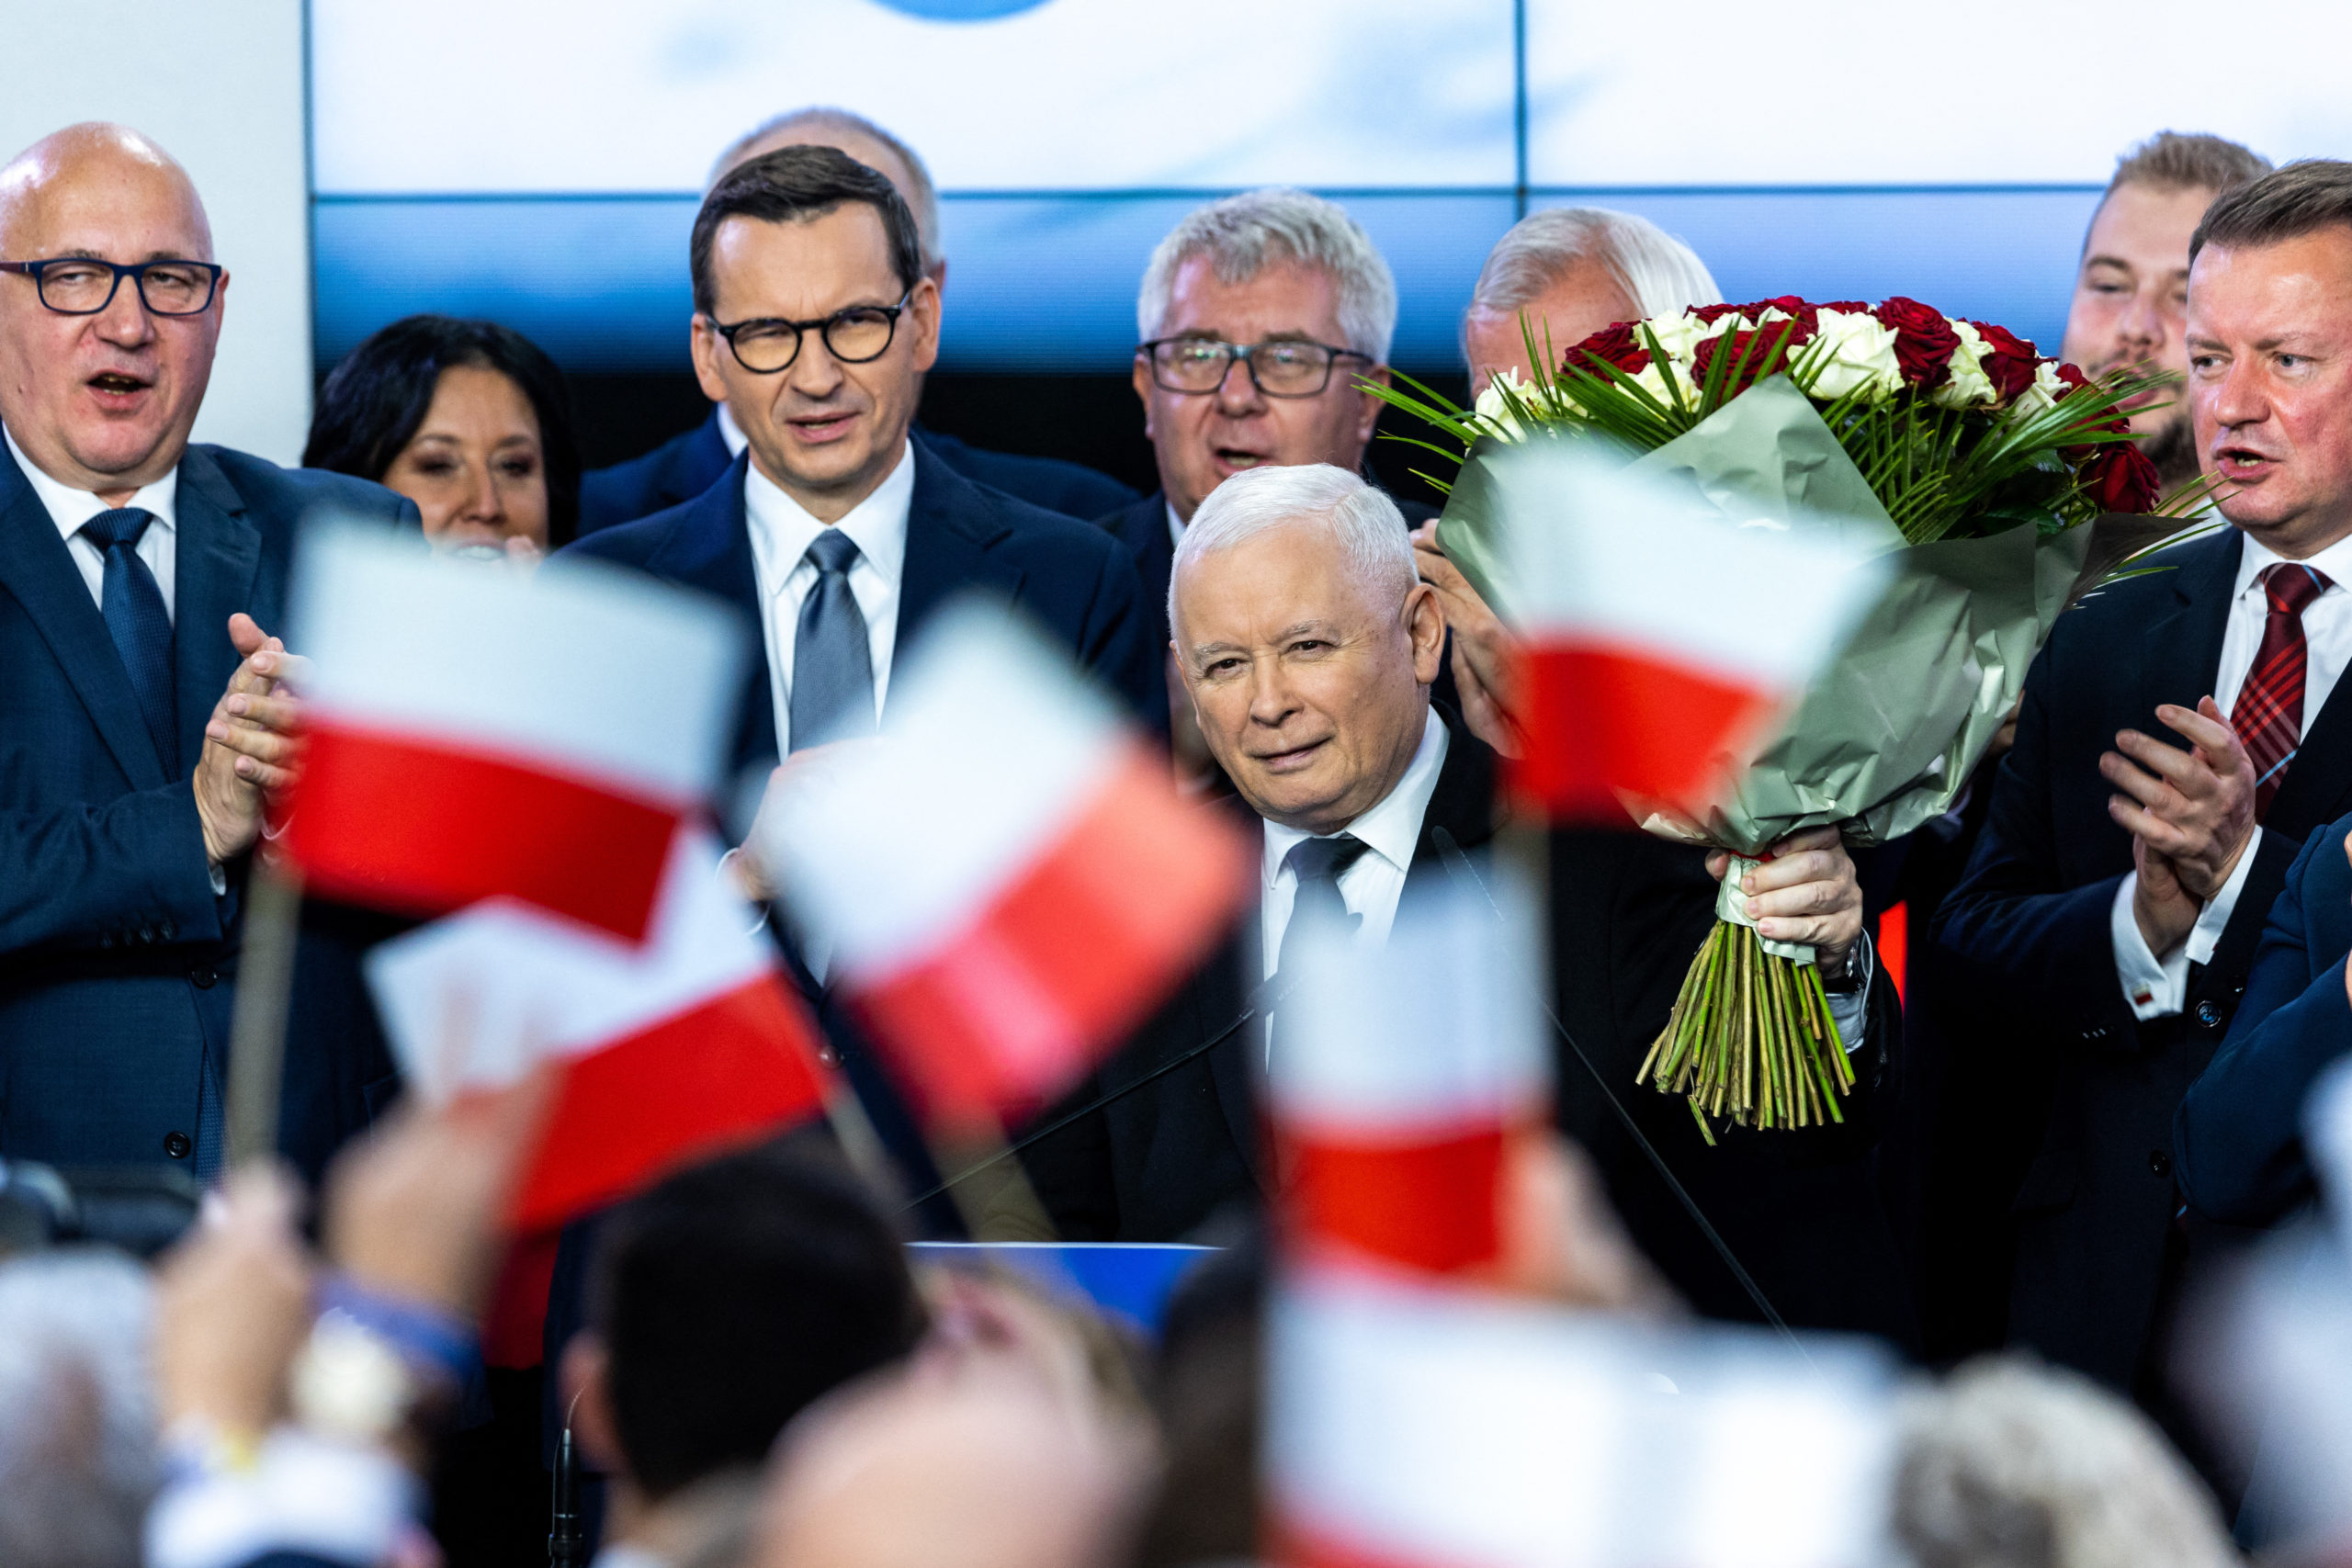 A PiS megnyerte a lengyel választást, de az ellenzéknek van esélye kormányt alakítani